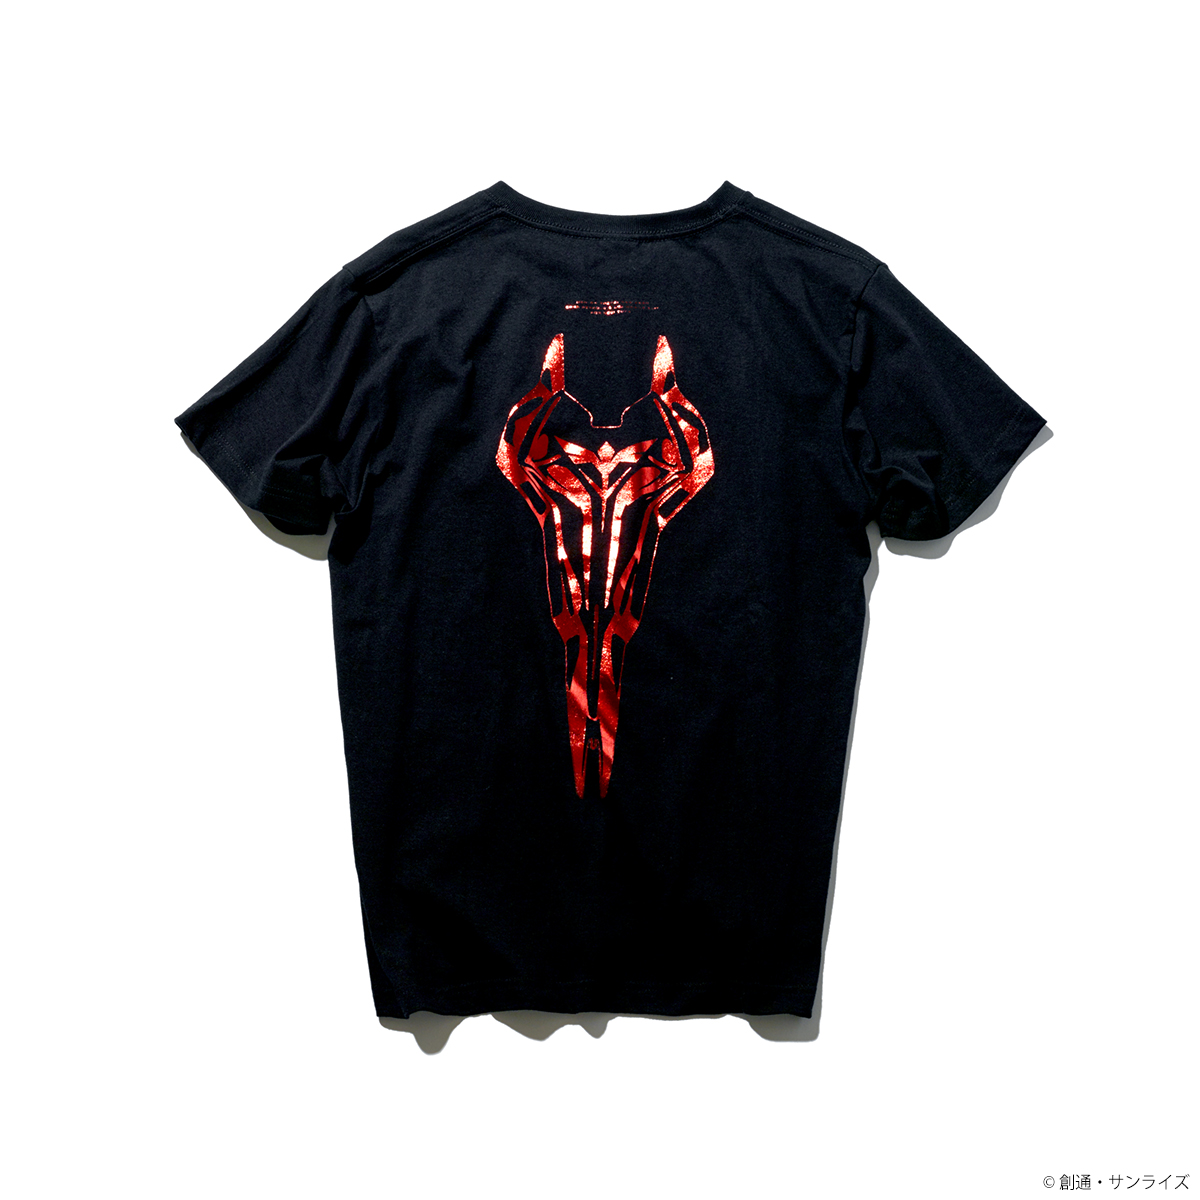 STRICT-G『機動戦士ガンダム 逆襲のシャア』箔プリントTシャツ  サザビー・シールド柄